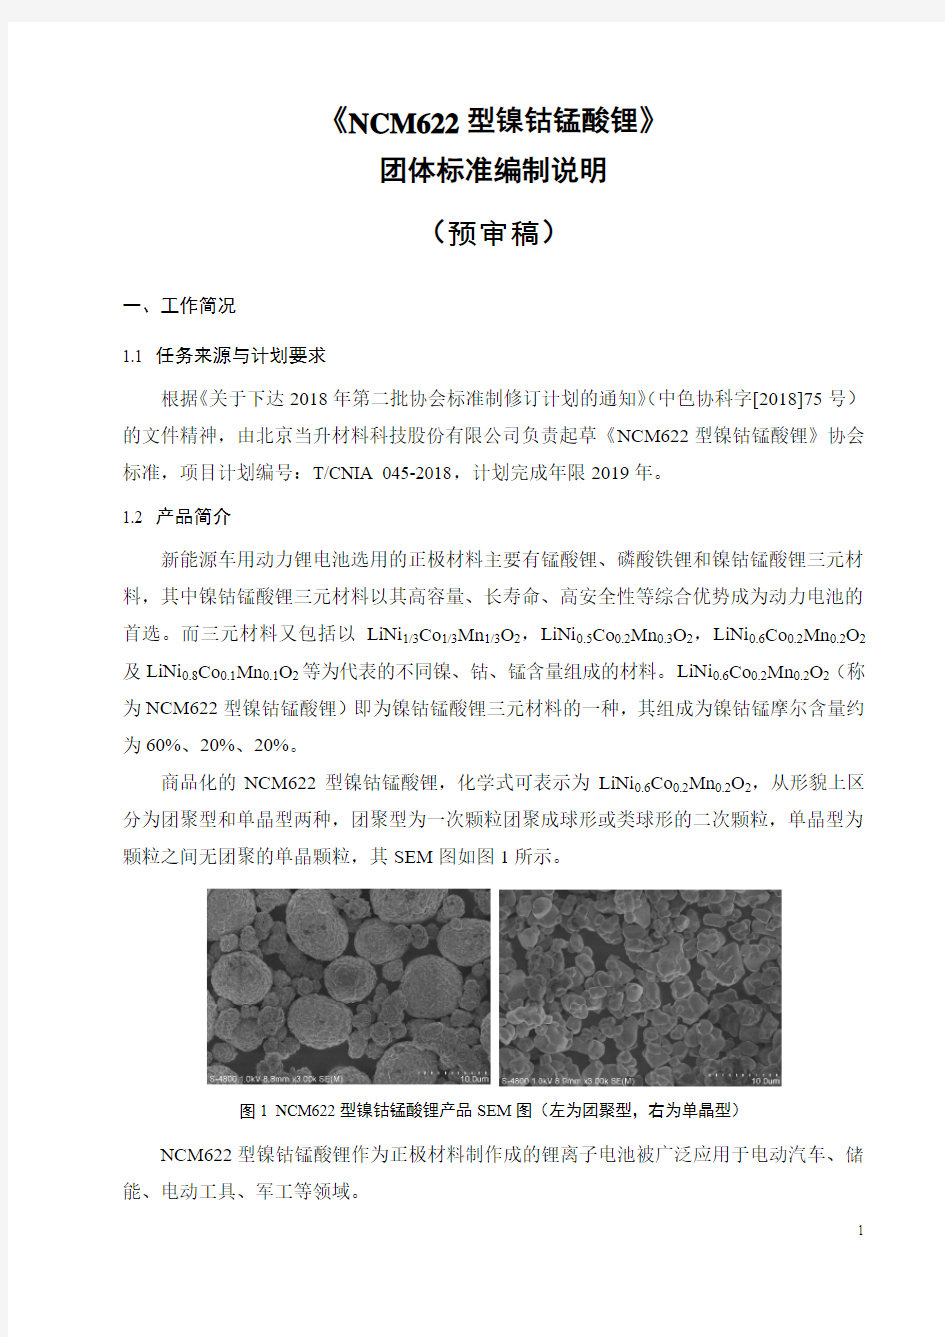 团体标准《NCM622型镍钴锰酸锂》--编制说明(预审稿).doc